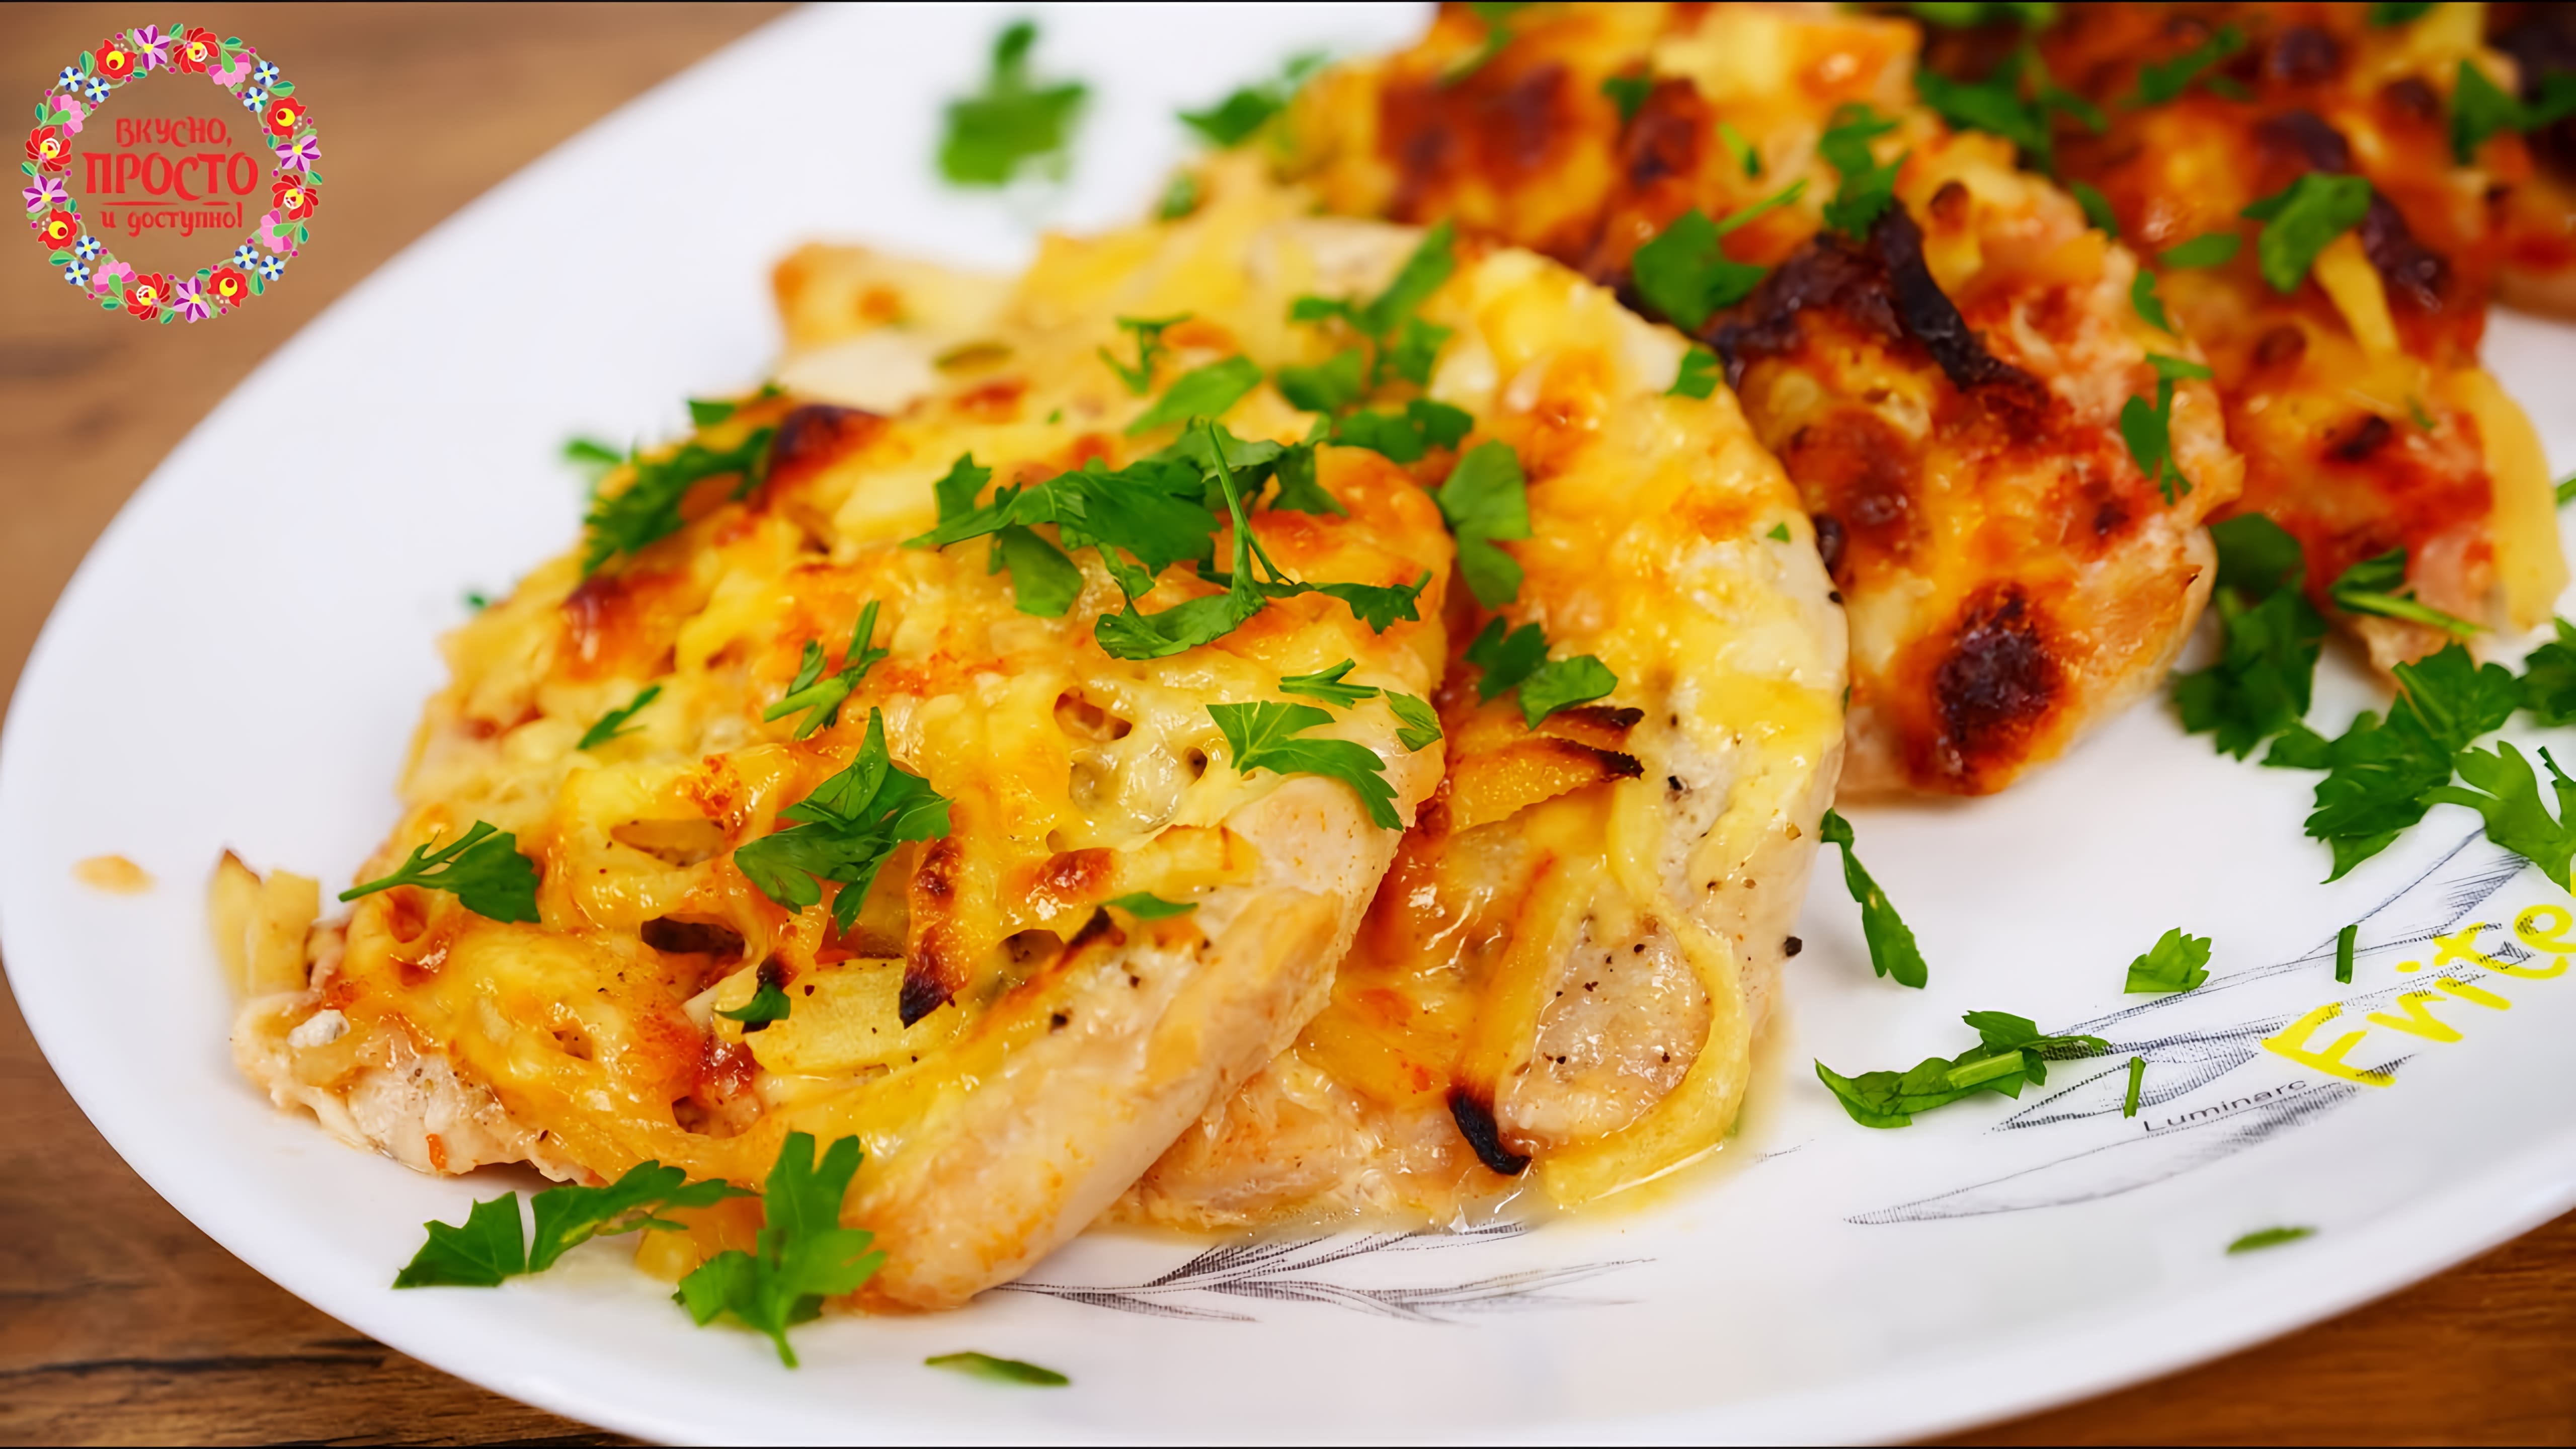 Видео: Супер вкусный обед или ужин Без Заморочек! На филе выкладываю начинку и запекаю в духовке.